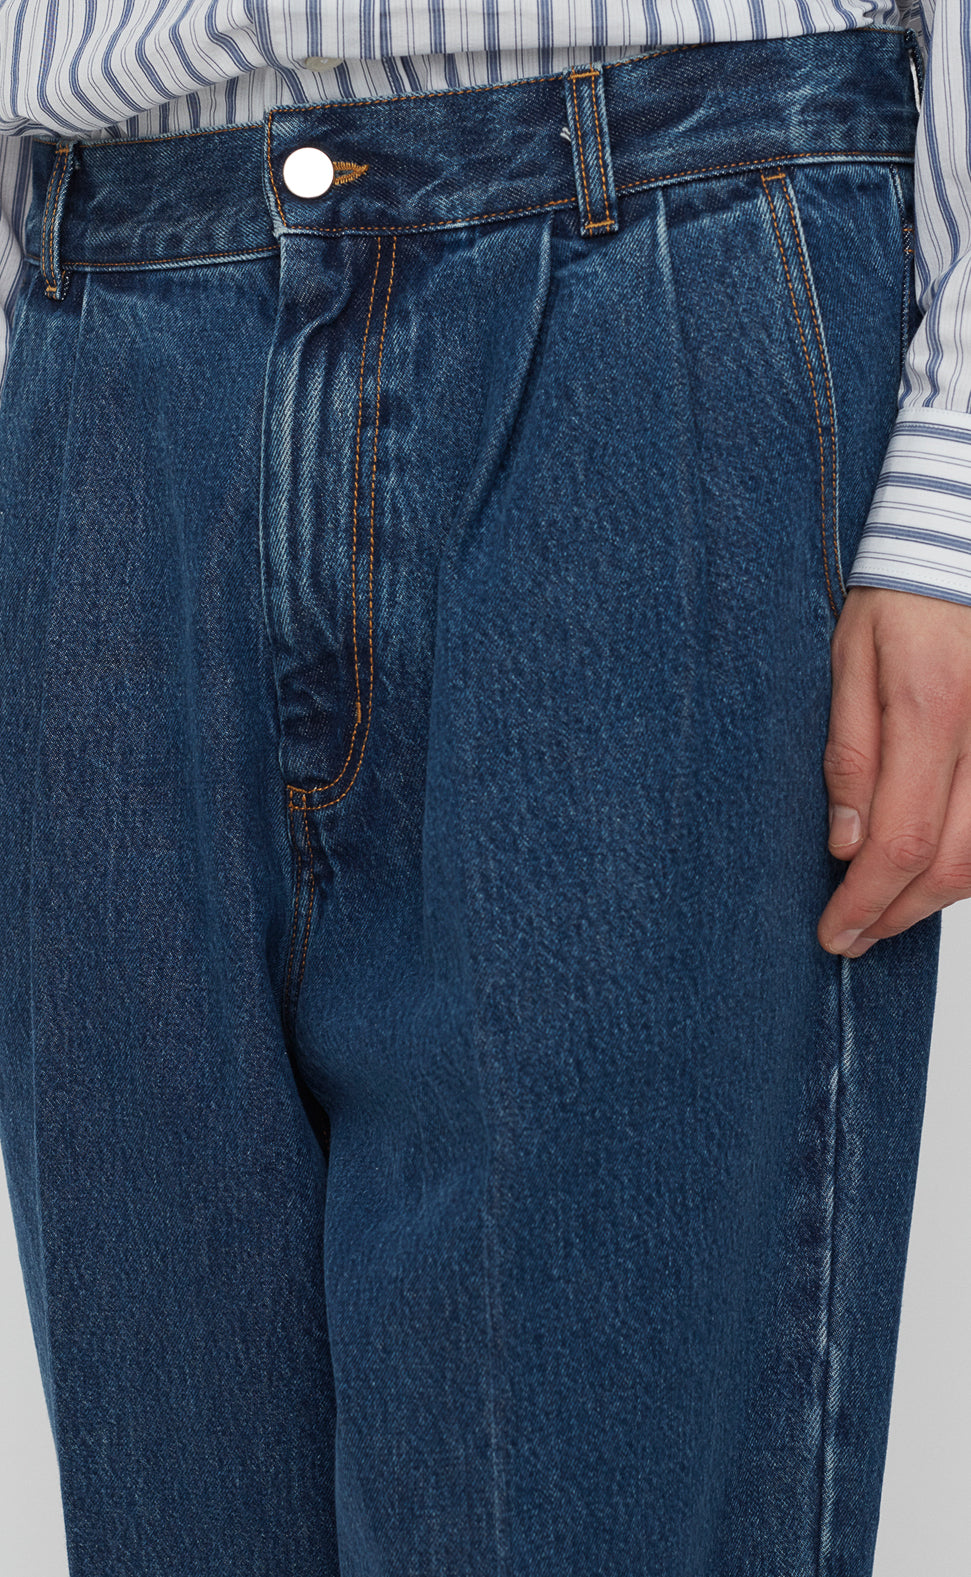 Bigger Jeans - Washed Blue